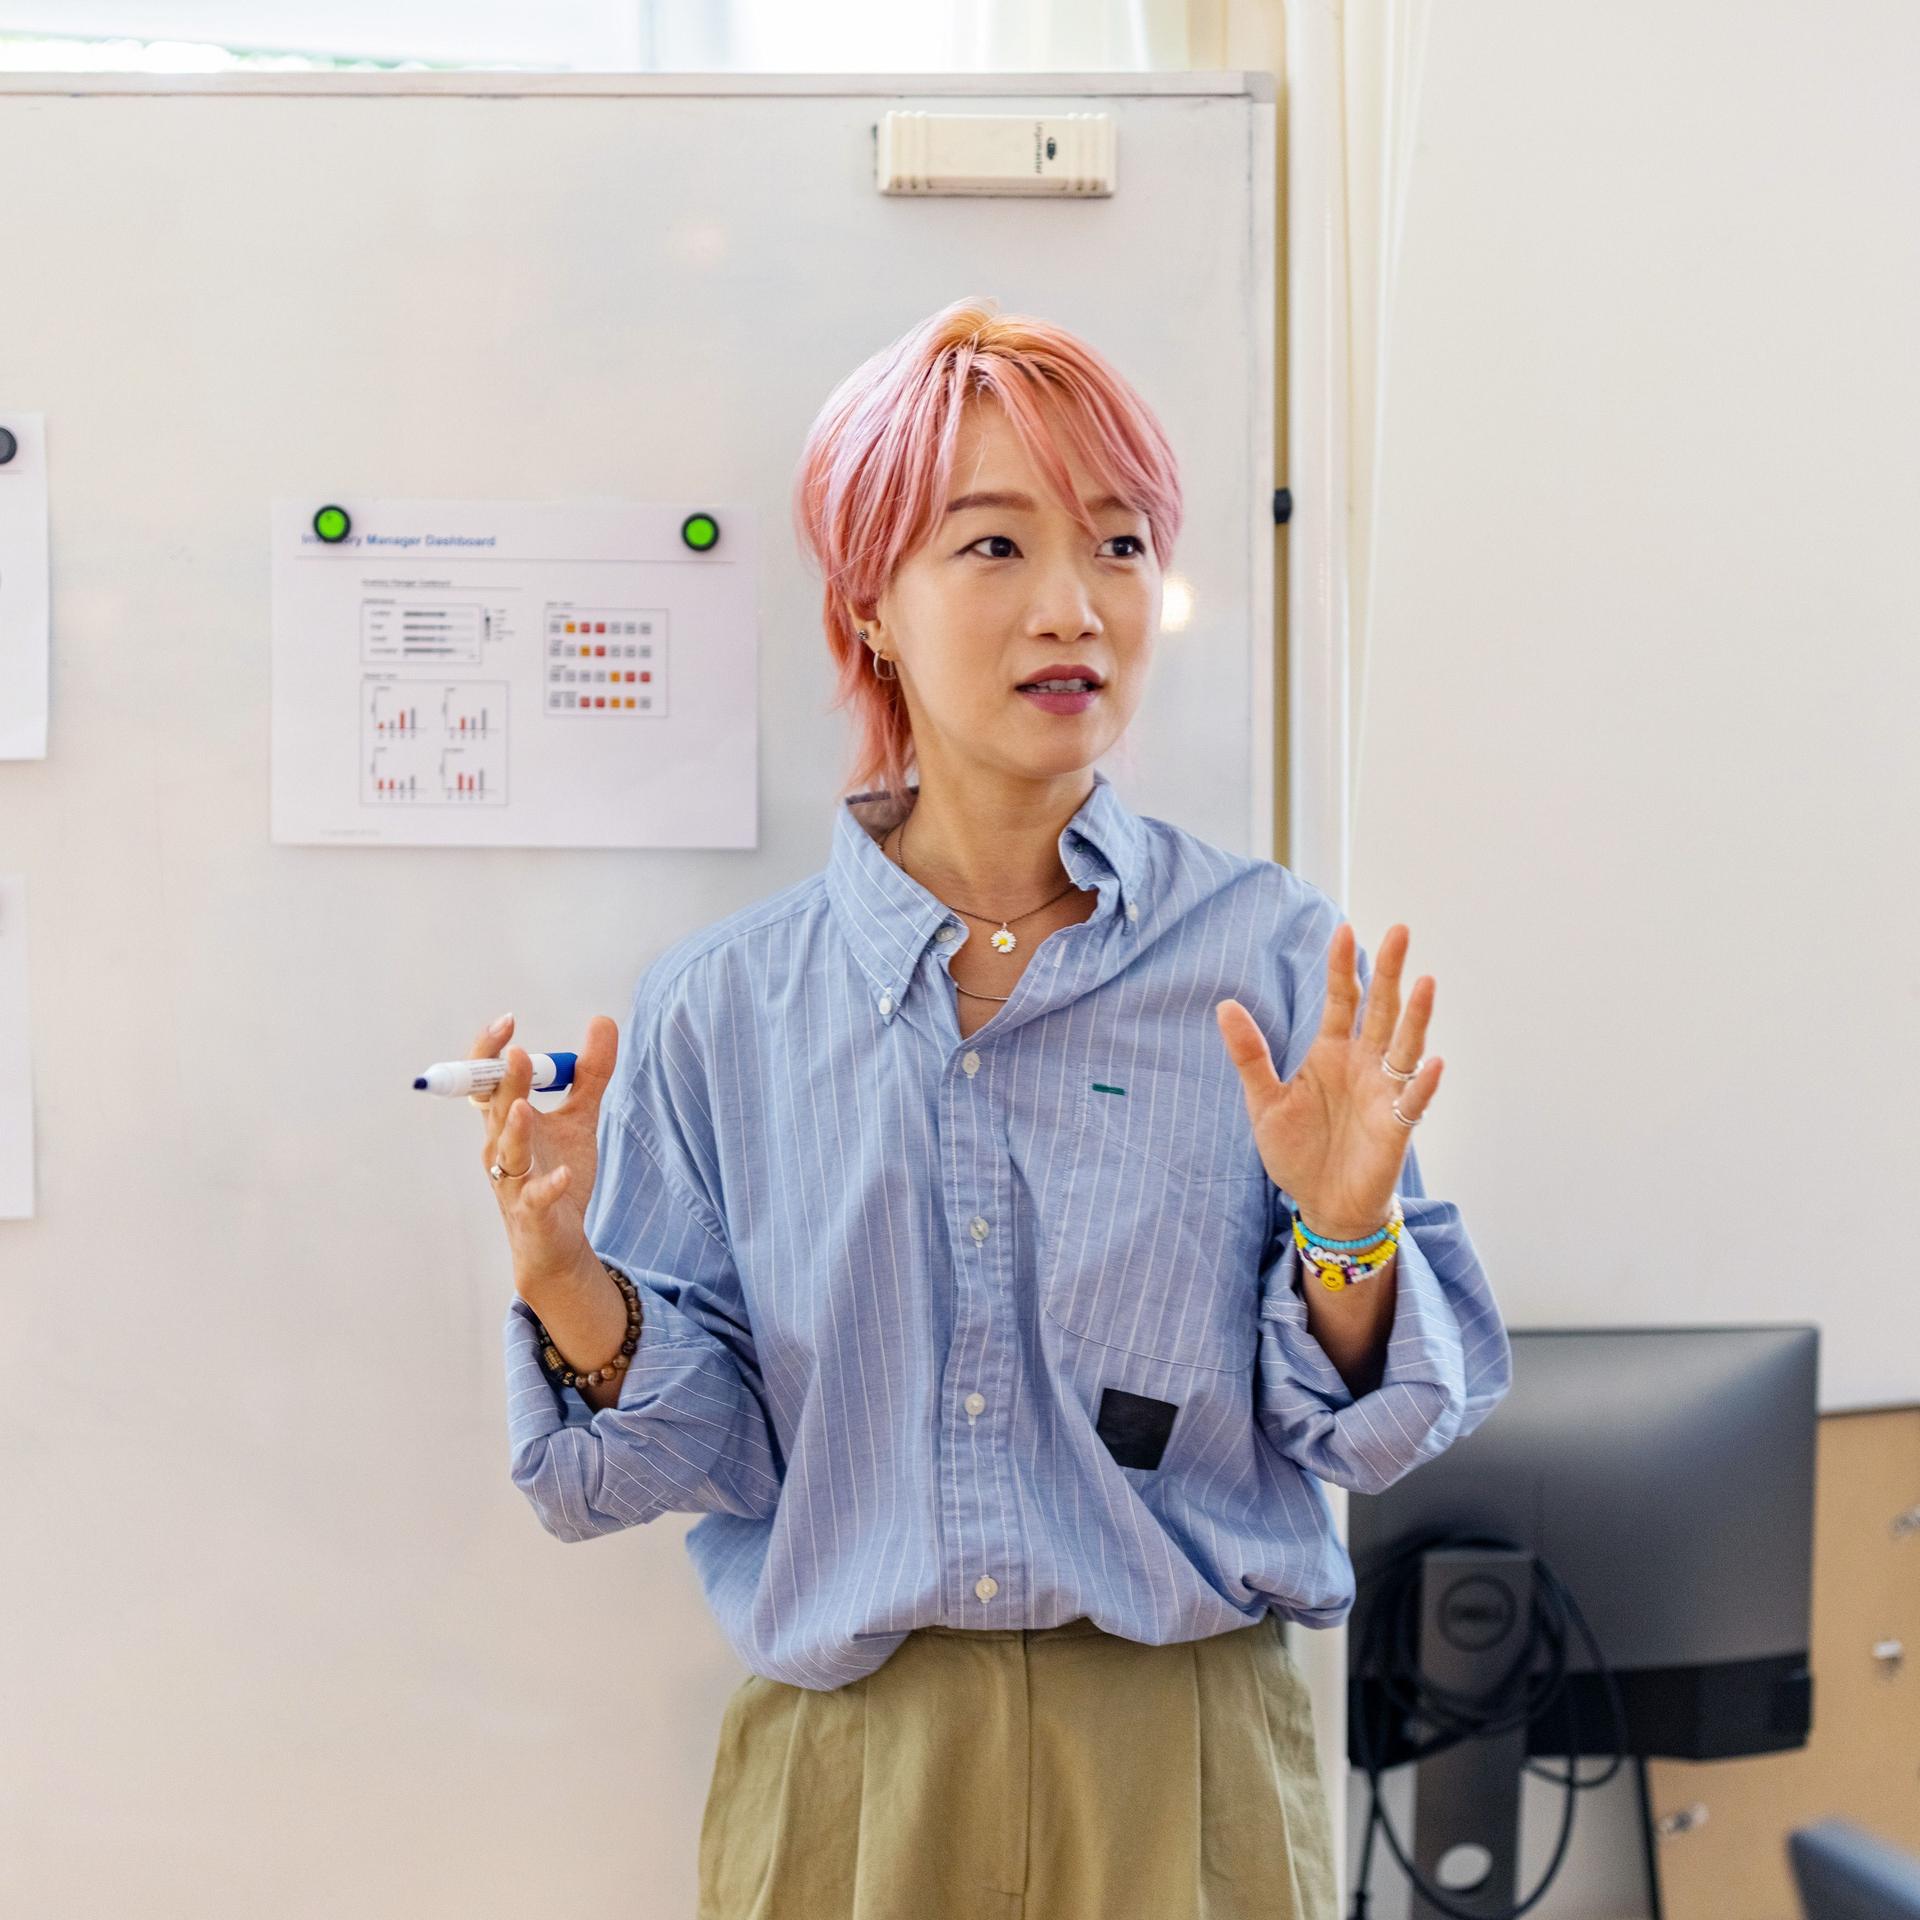 Junge Frau mit rosa gefärbten Haaren steht gestikulierend vor einem Whiteboard mit Charts und Graphen